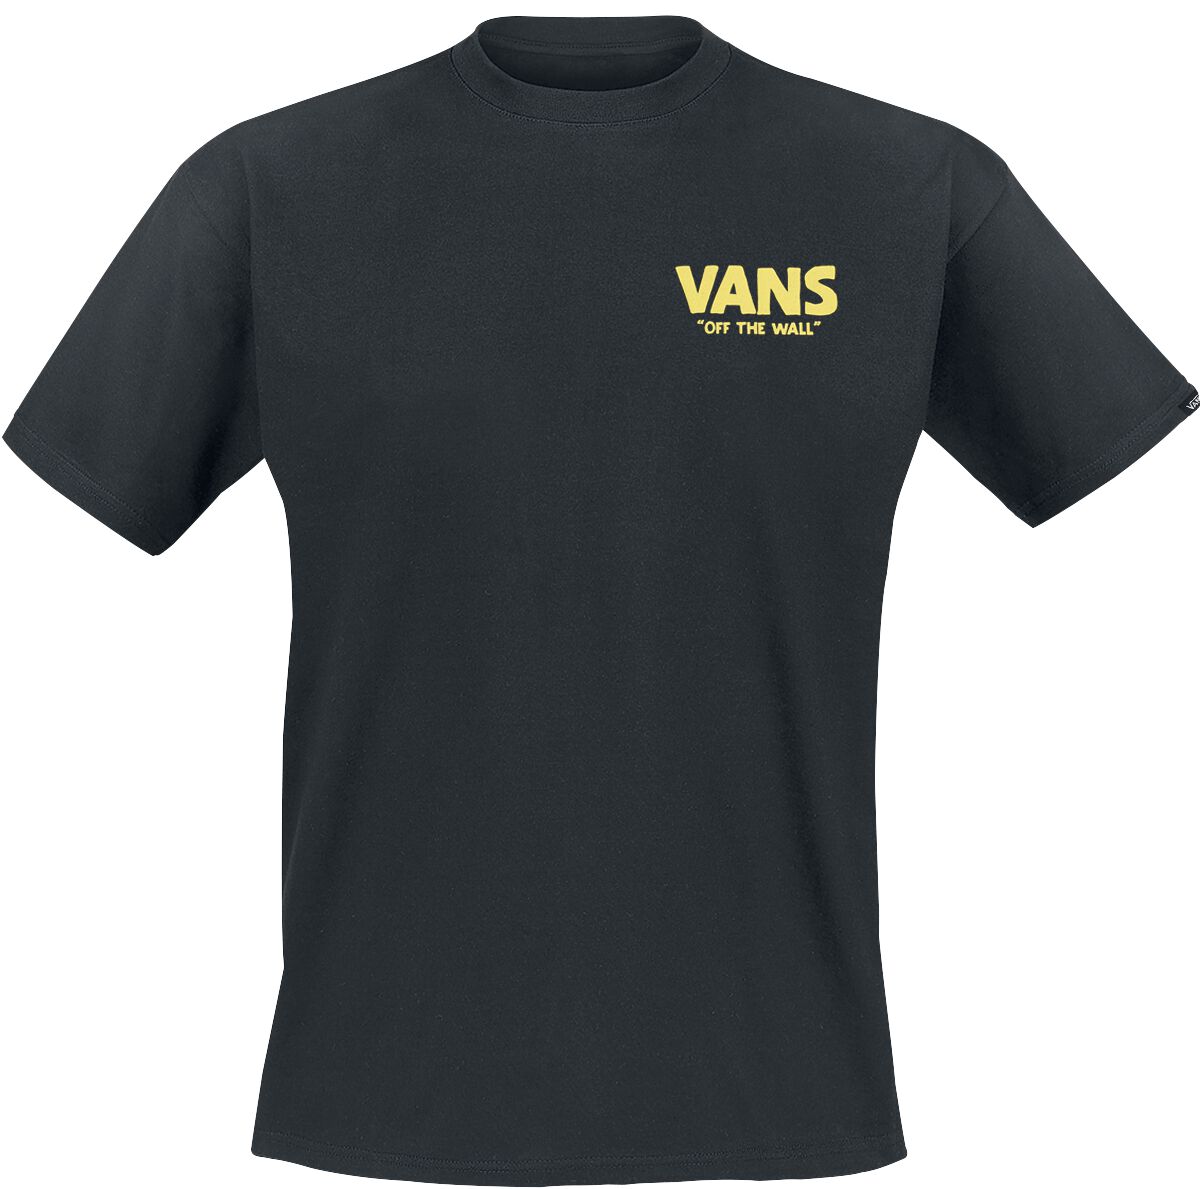 Vans T-Shirt - Stay Cool Tee - S bis XXL - für Männer - Größe M - schwarz